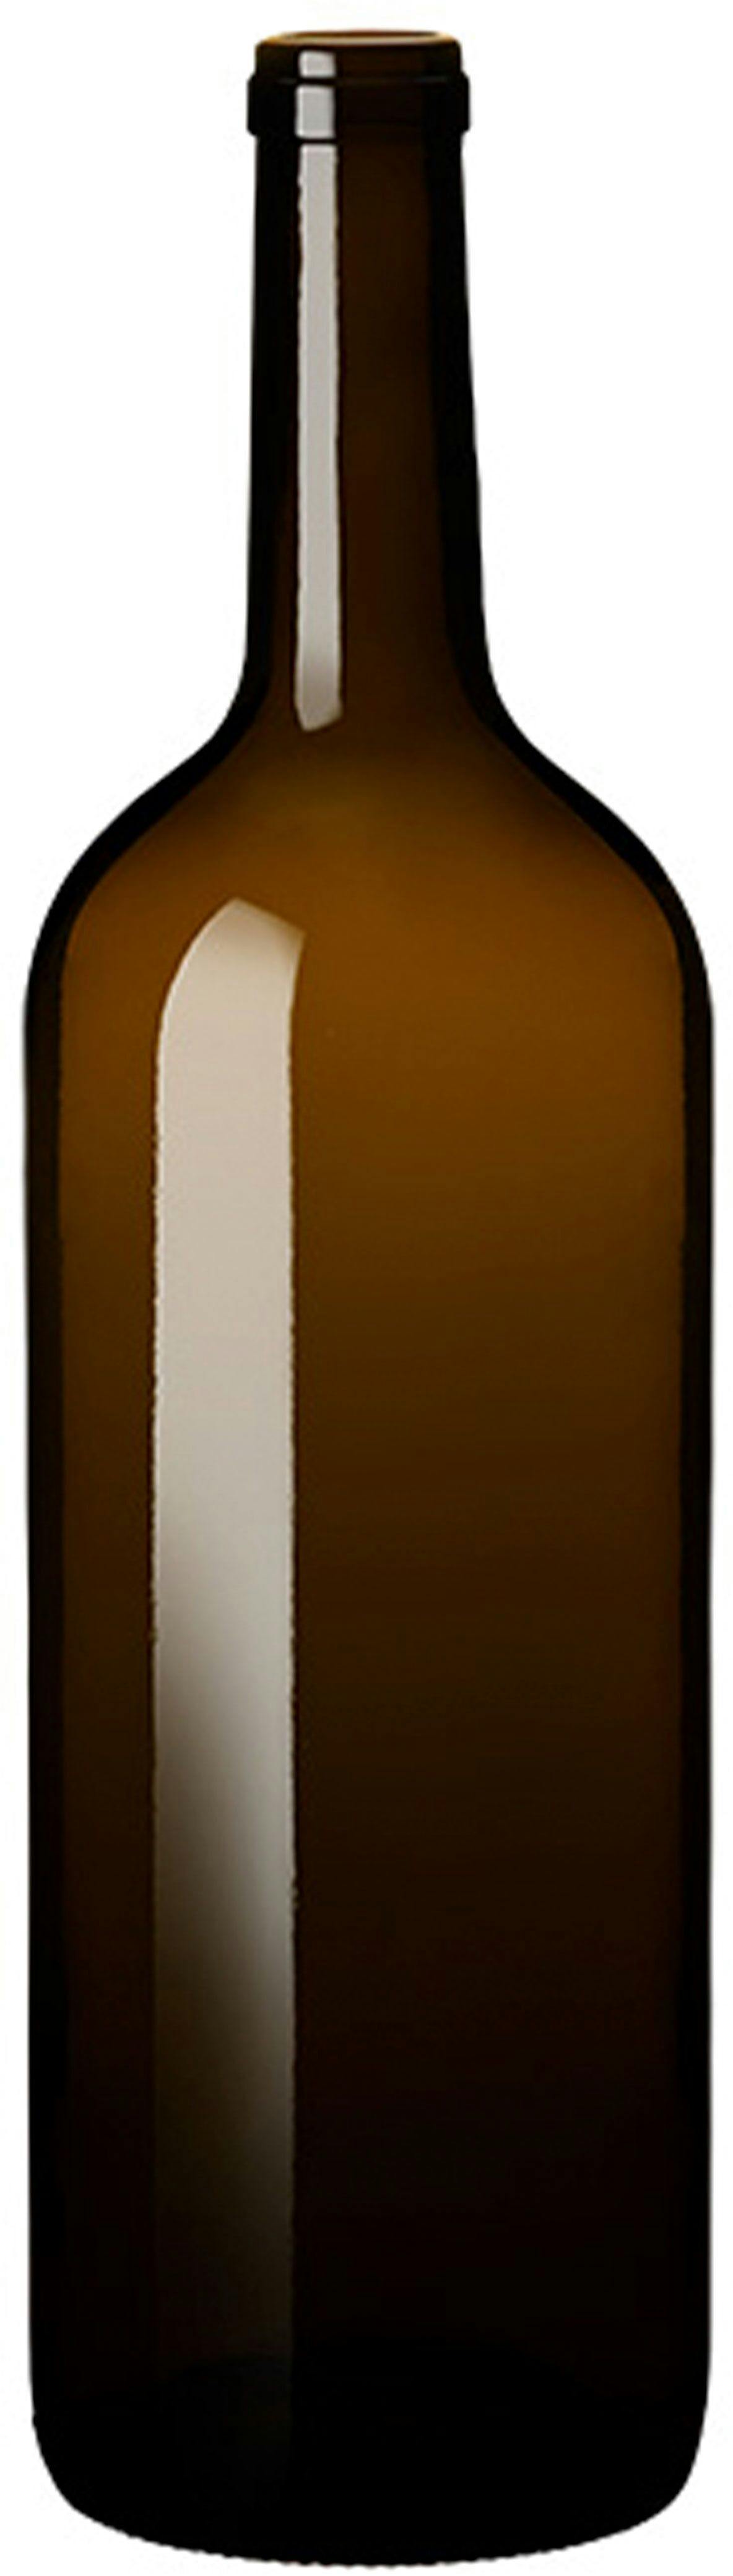 Bottle BORD HORUS MAGNA STD 1500 S VG